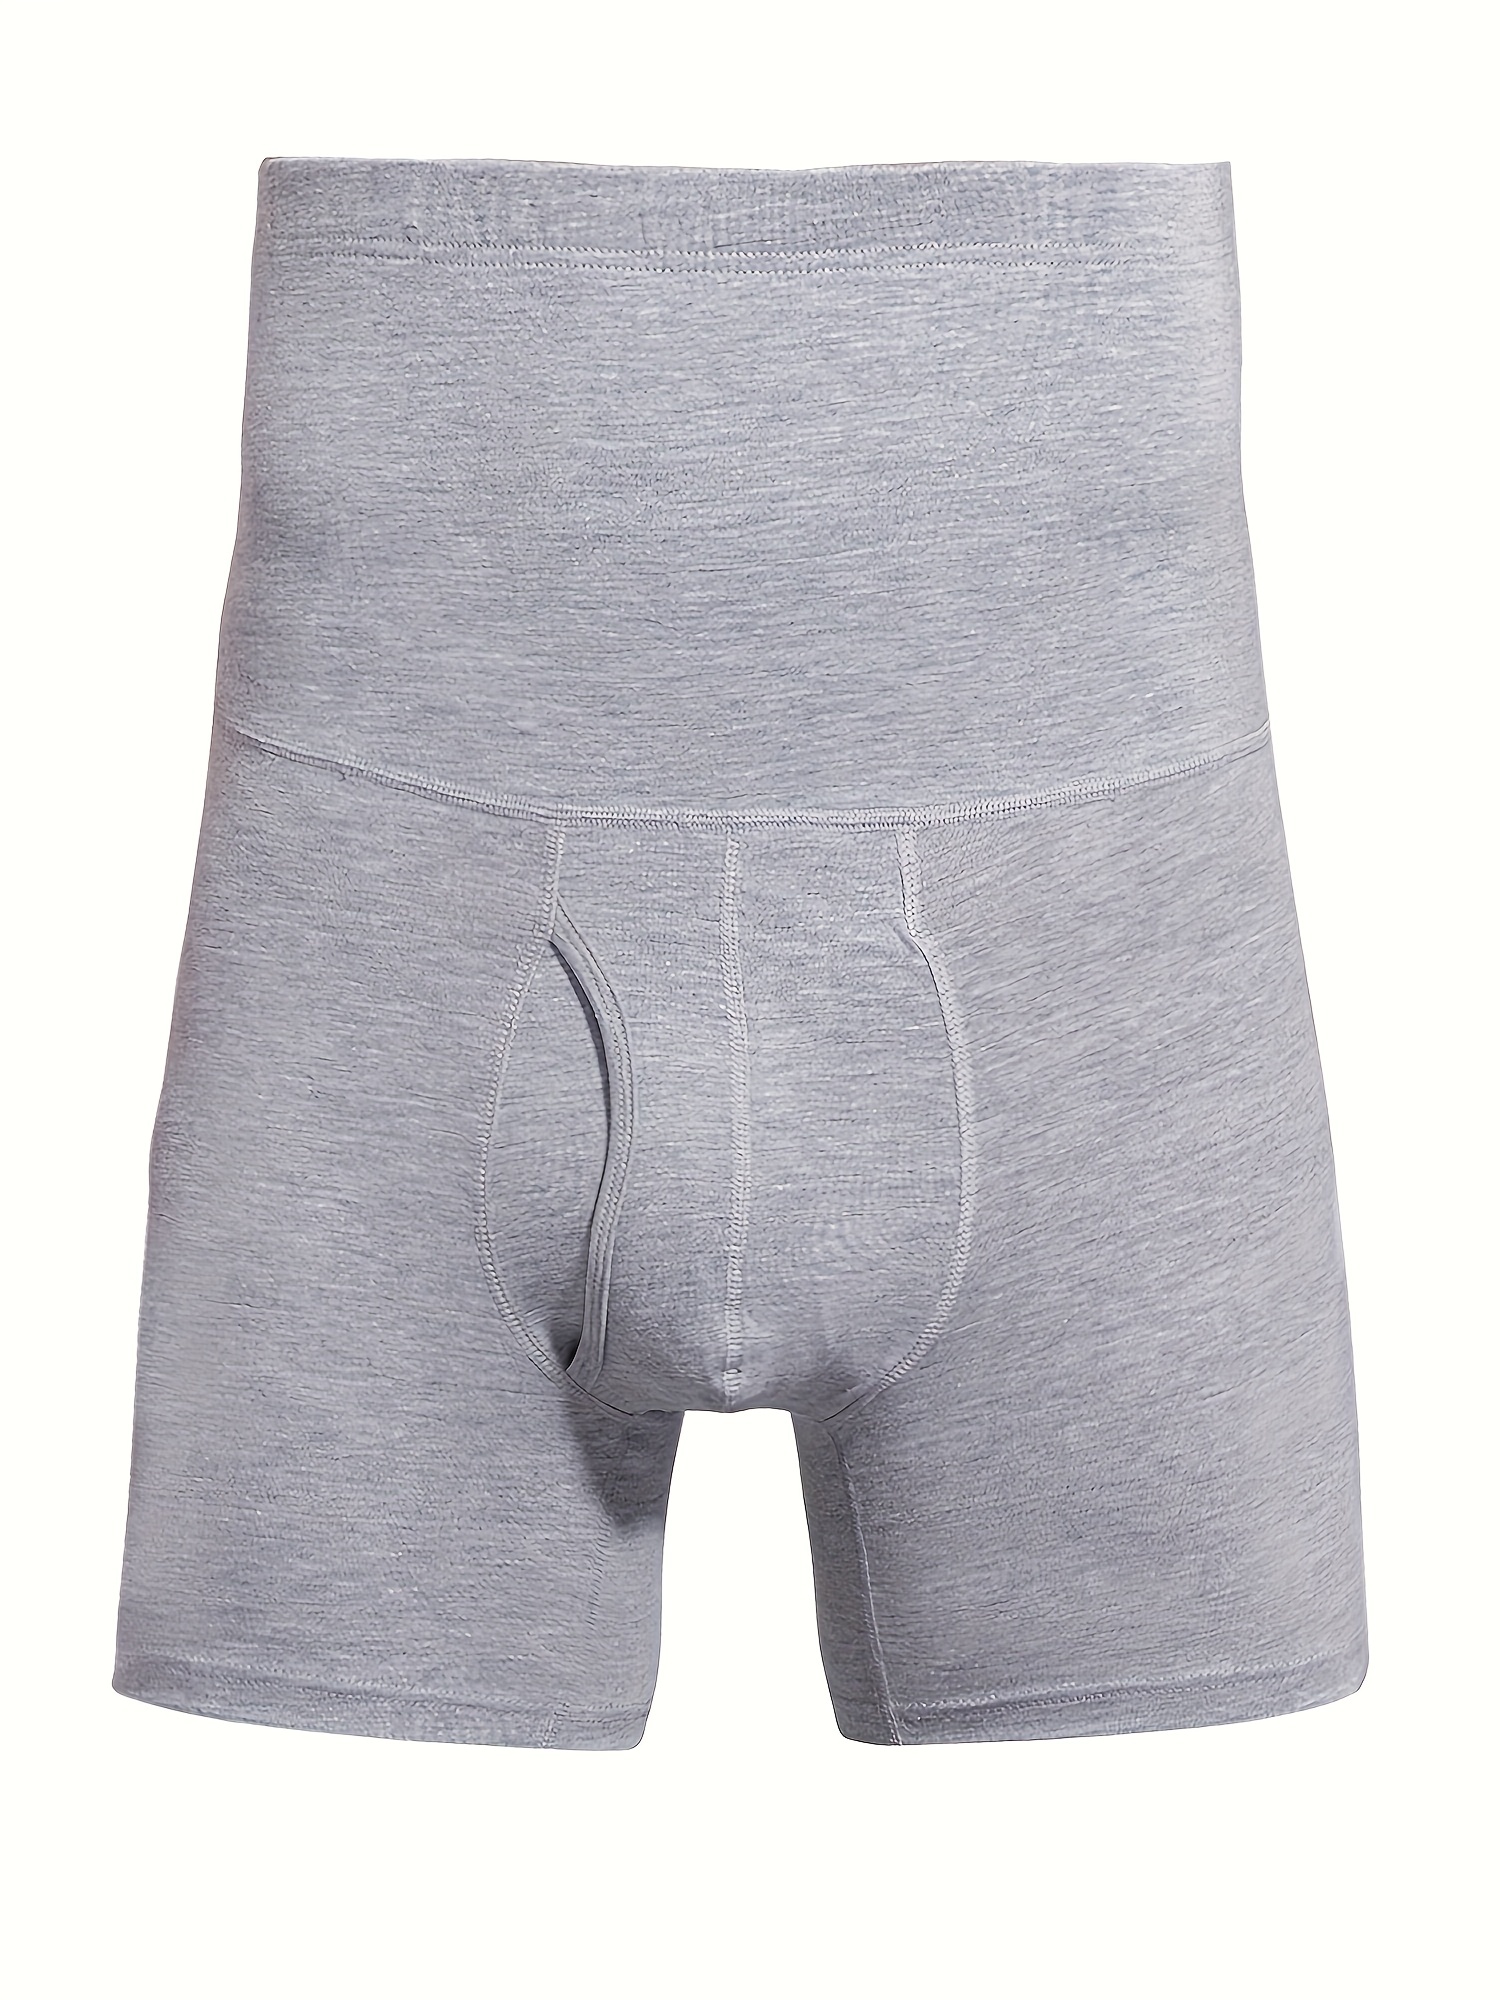 Men Incontinence Underwear - Temu